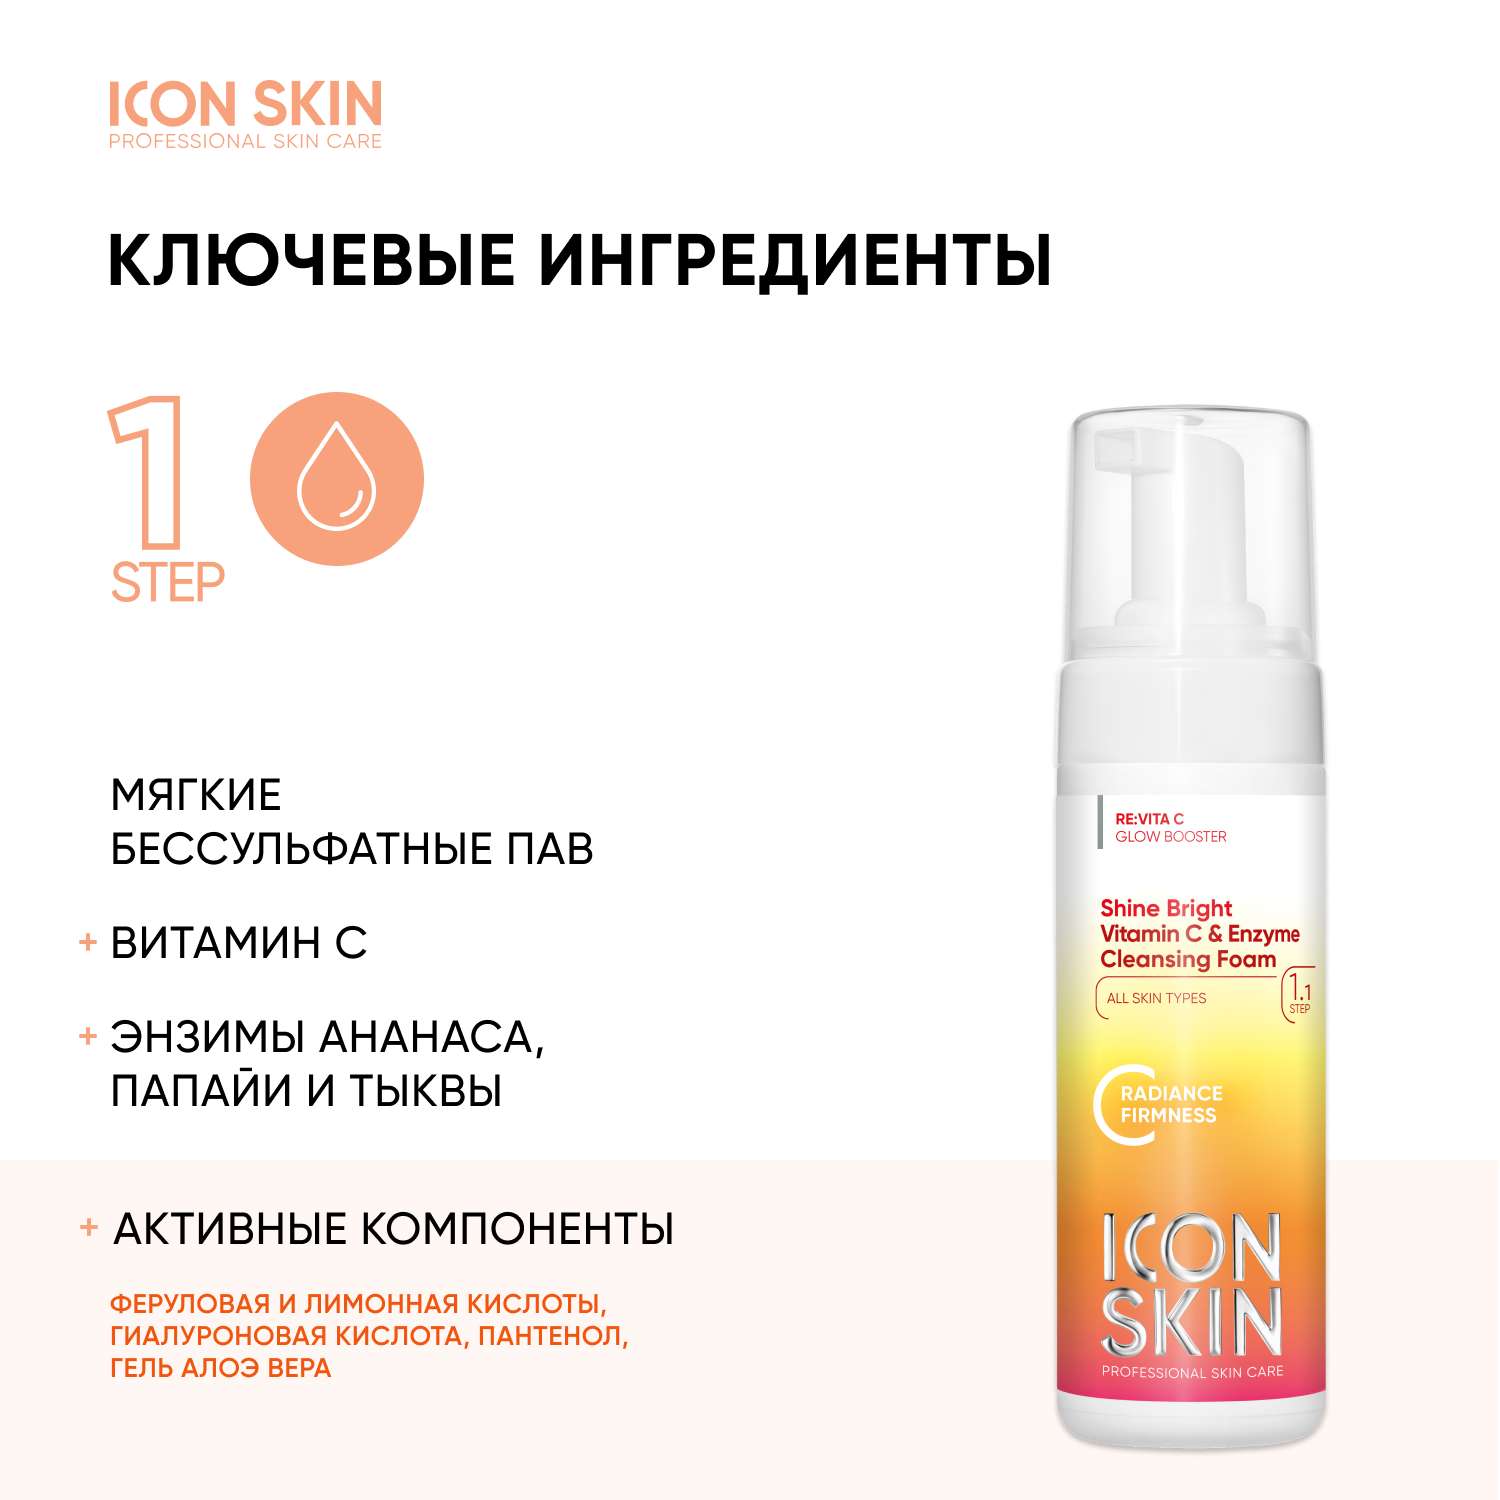 Пенка для умывания ICON SKIN Shine Bright - фото 3